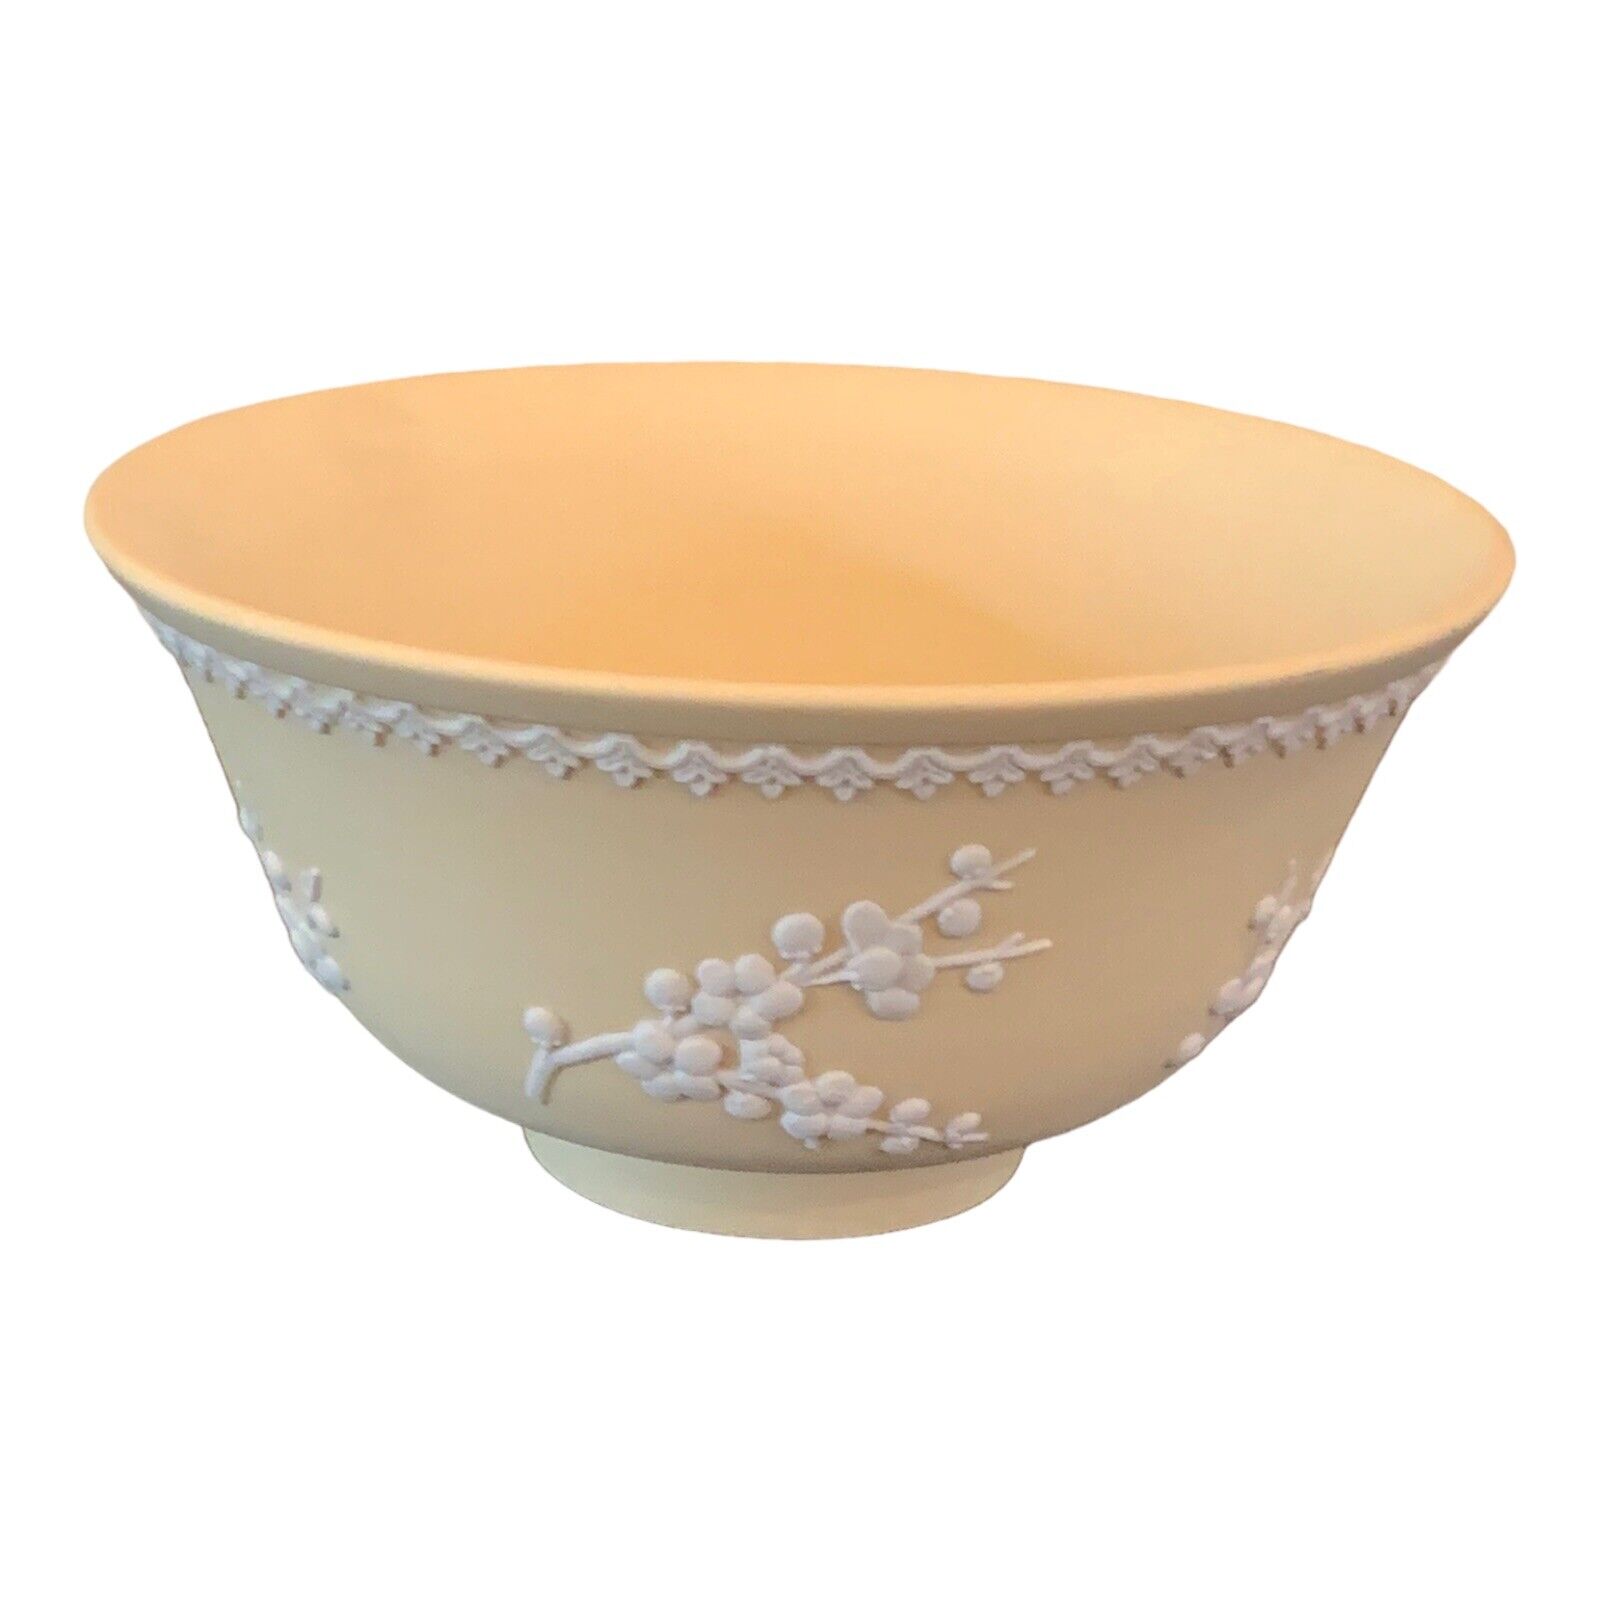 Wedgwood Jasperware Yellow Primrose White Prunus Footed Bowl 5 3/4 Inches